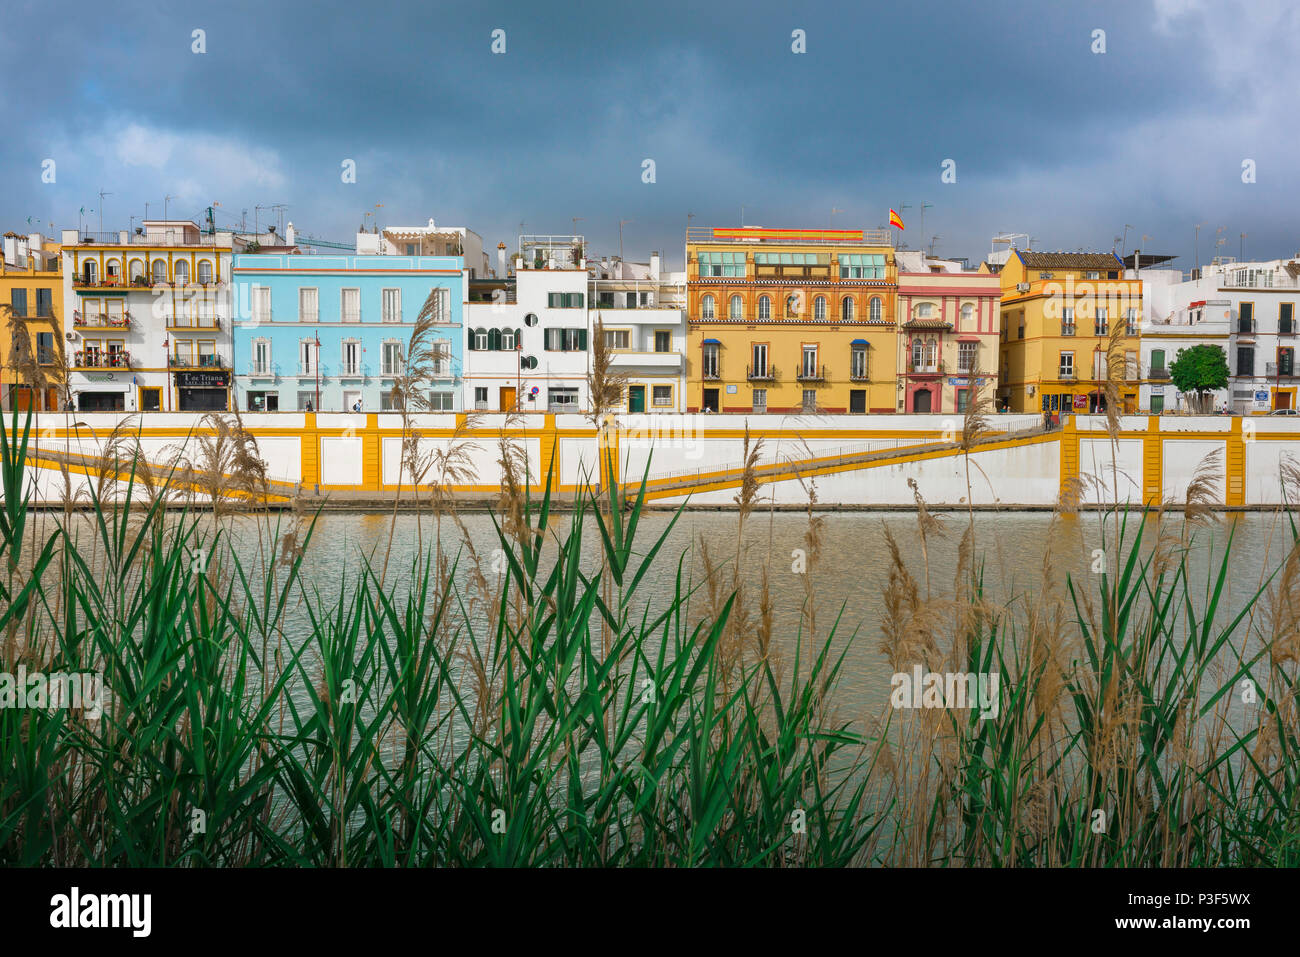 Andalusien Fluss, Blick auf die Häuser und Apartments im Barrio Triana Viertel von Sevilla - Sevilla - entlang des Rio Guadalquivir in Andalusien, Spanien. Stockfoto